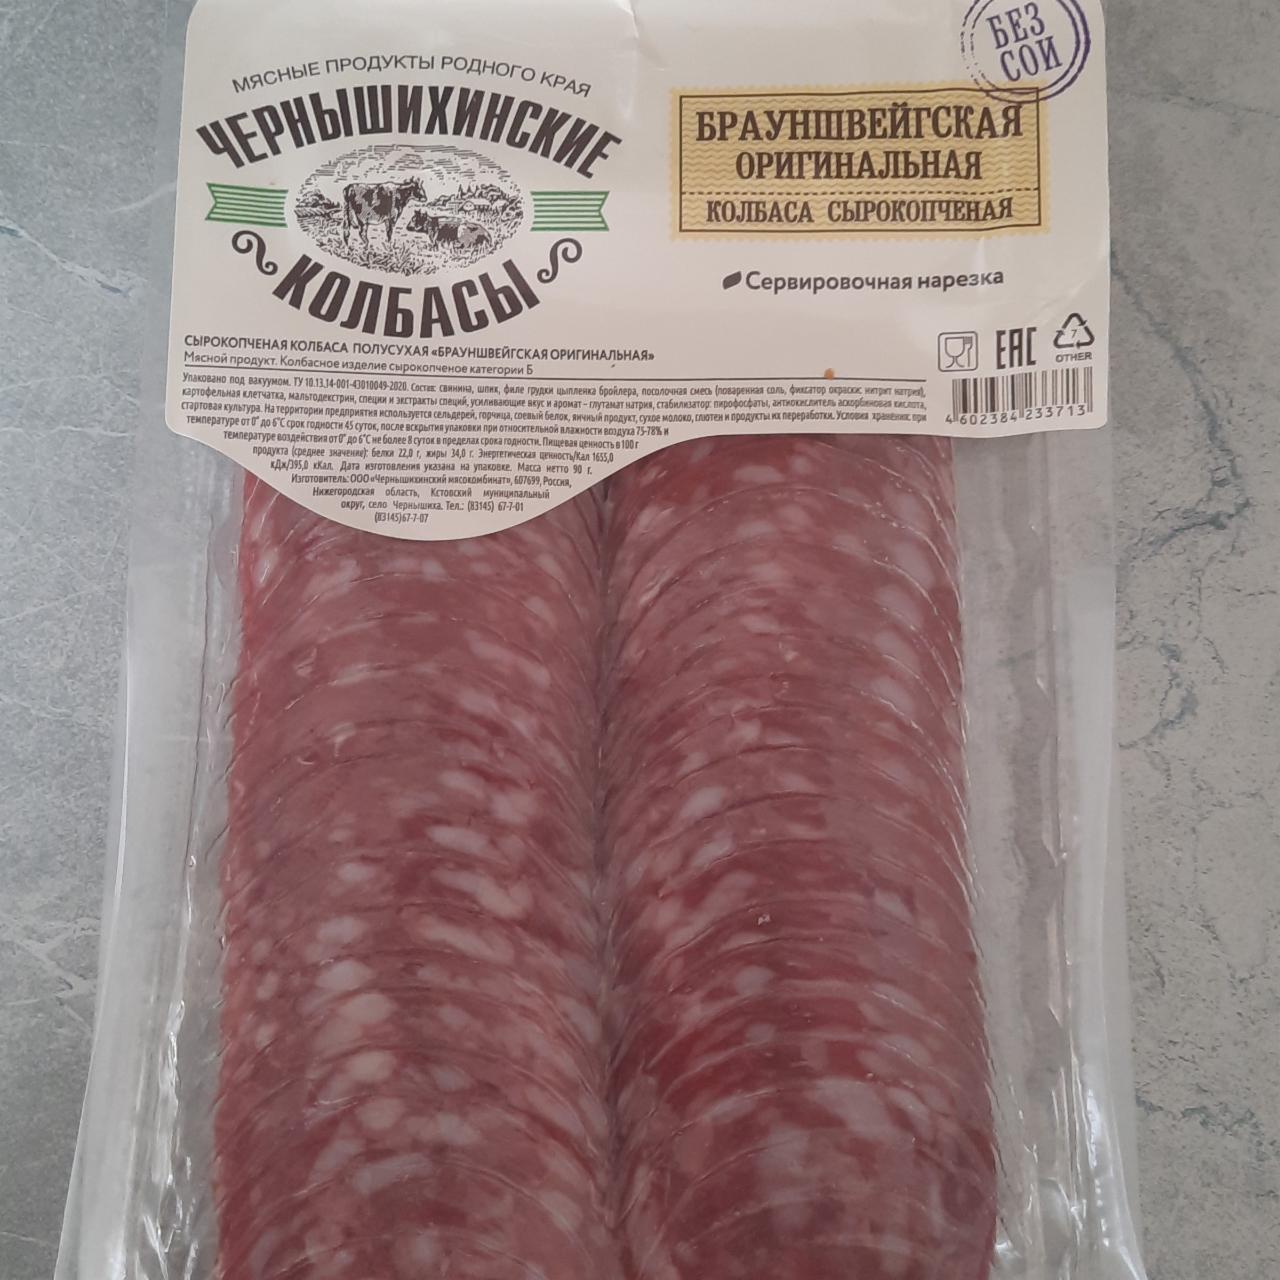 Фото - колбаса сырокопченая брауншвейгская оригинальная Чернышихинские колбасы